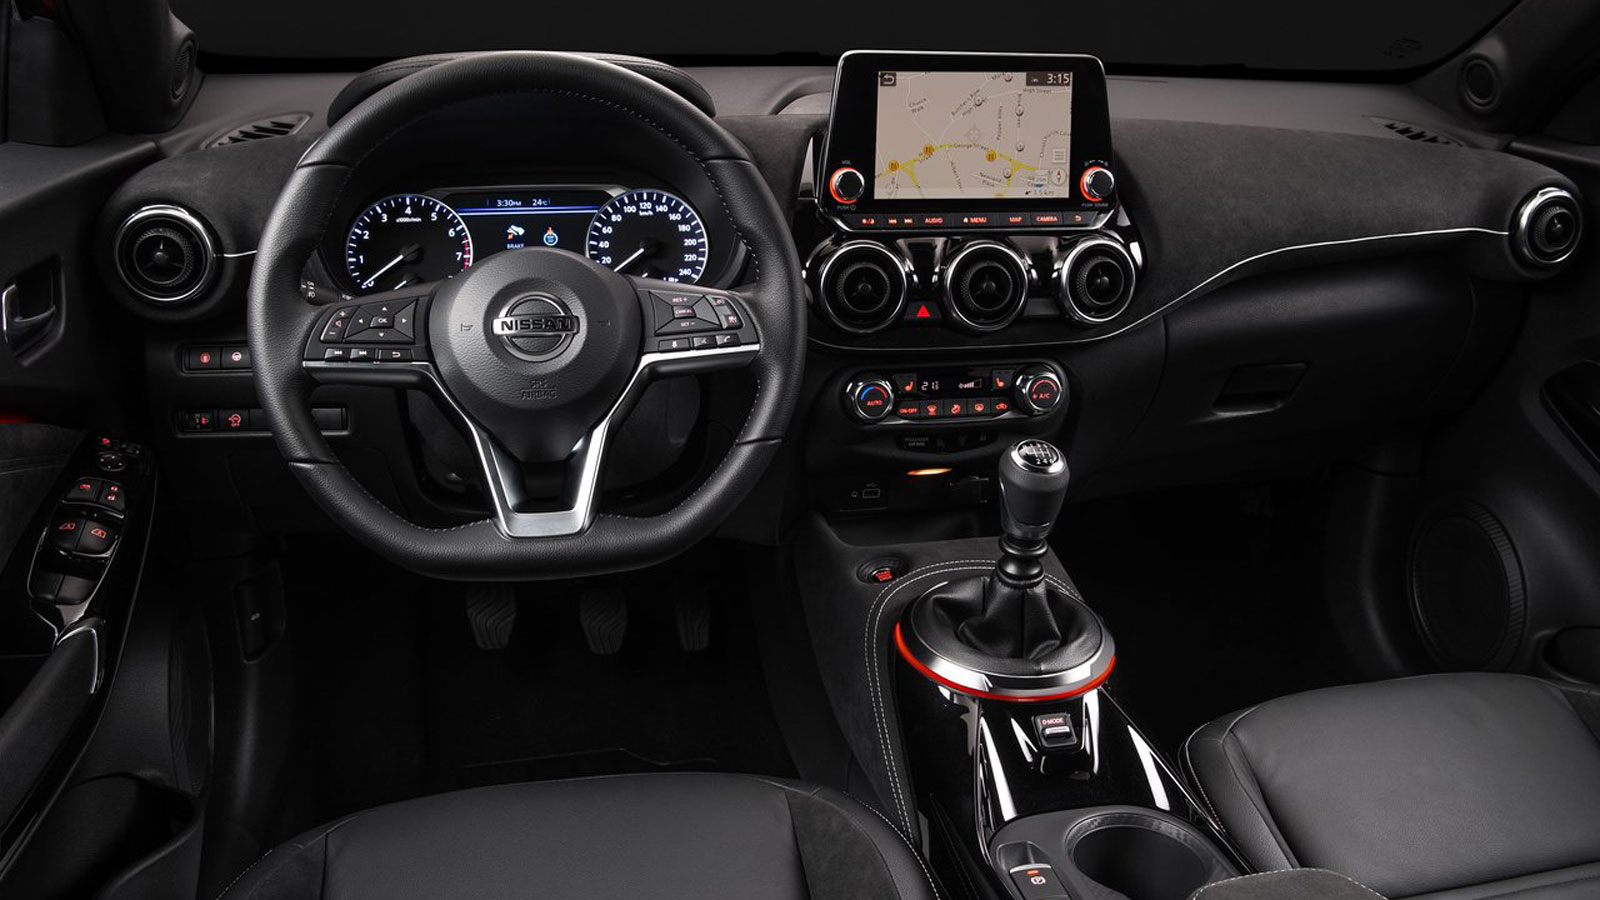 Το εσωτερικό του Nissan Juke έχει ποιοτικά υλικά και είναι ευρύχωρο, χάρη στις αυξημένες διαστάσεις της νέας γενιάς